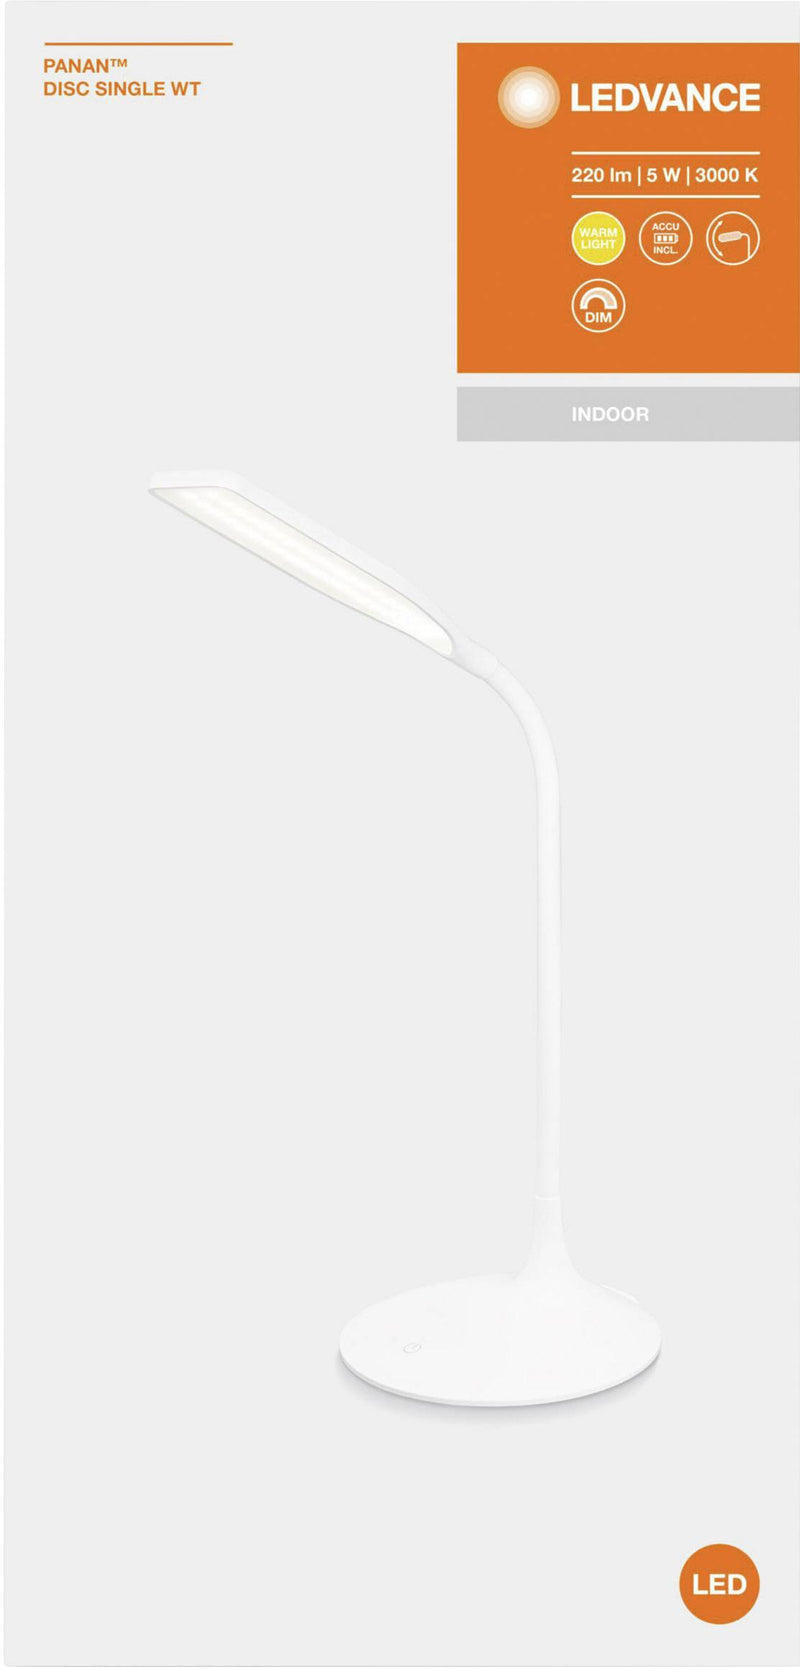 Настольная лампа LEDVANCE PANAN 5W(220Lm), IP20, белый, теплый белый свет 3000K